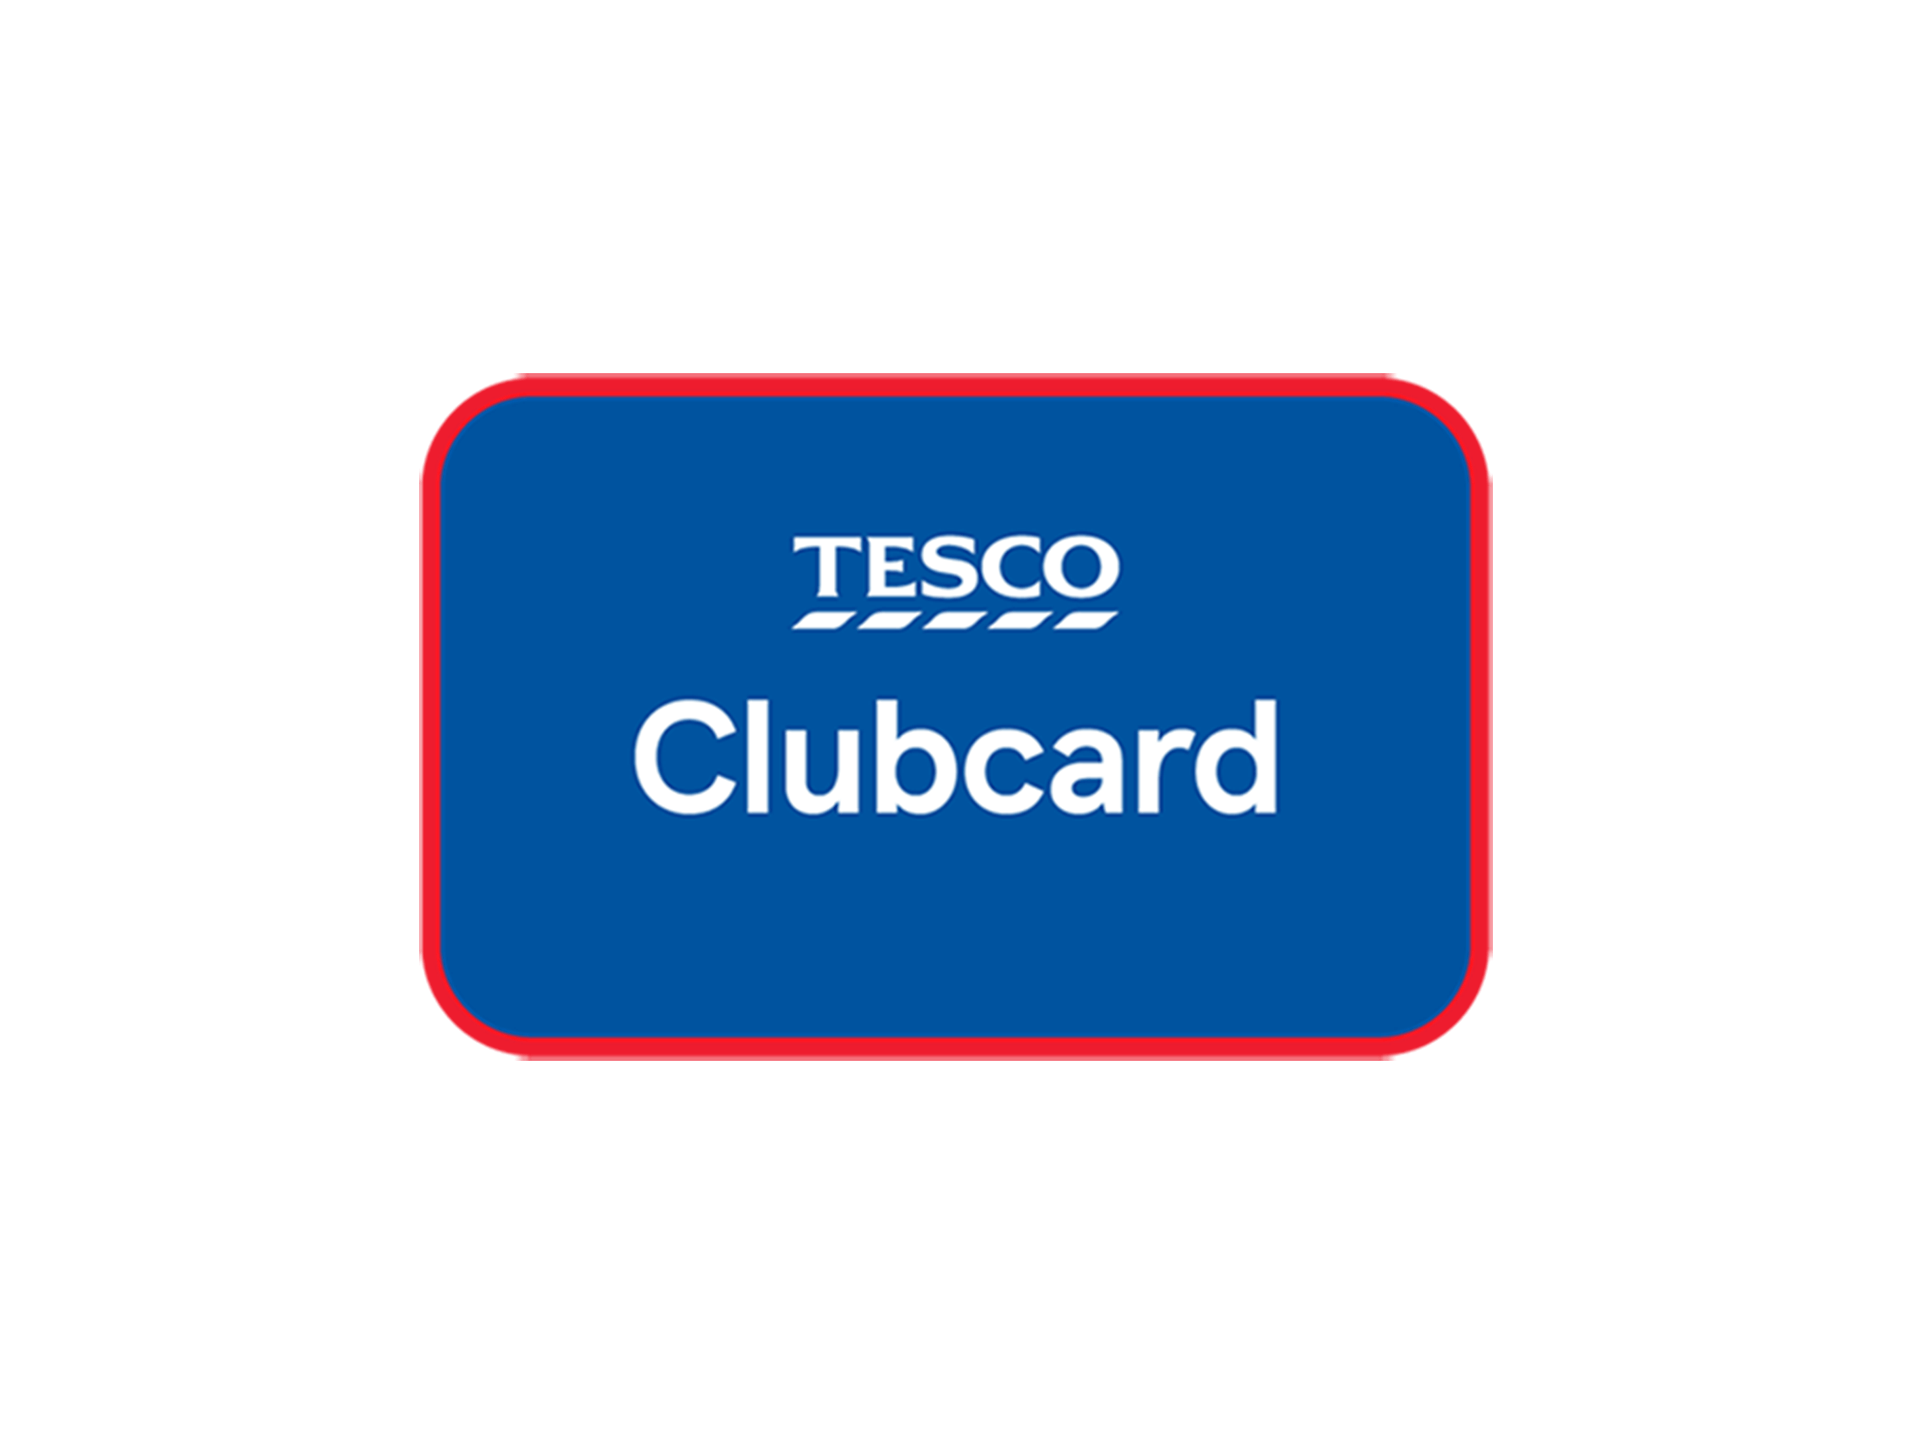 Tesco Clubcard logo